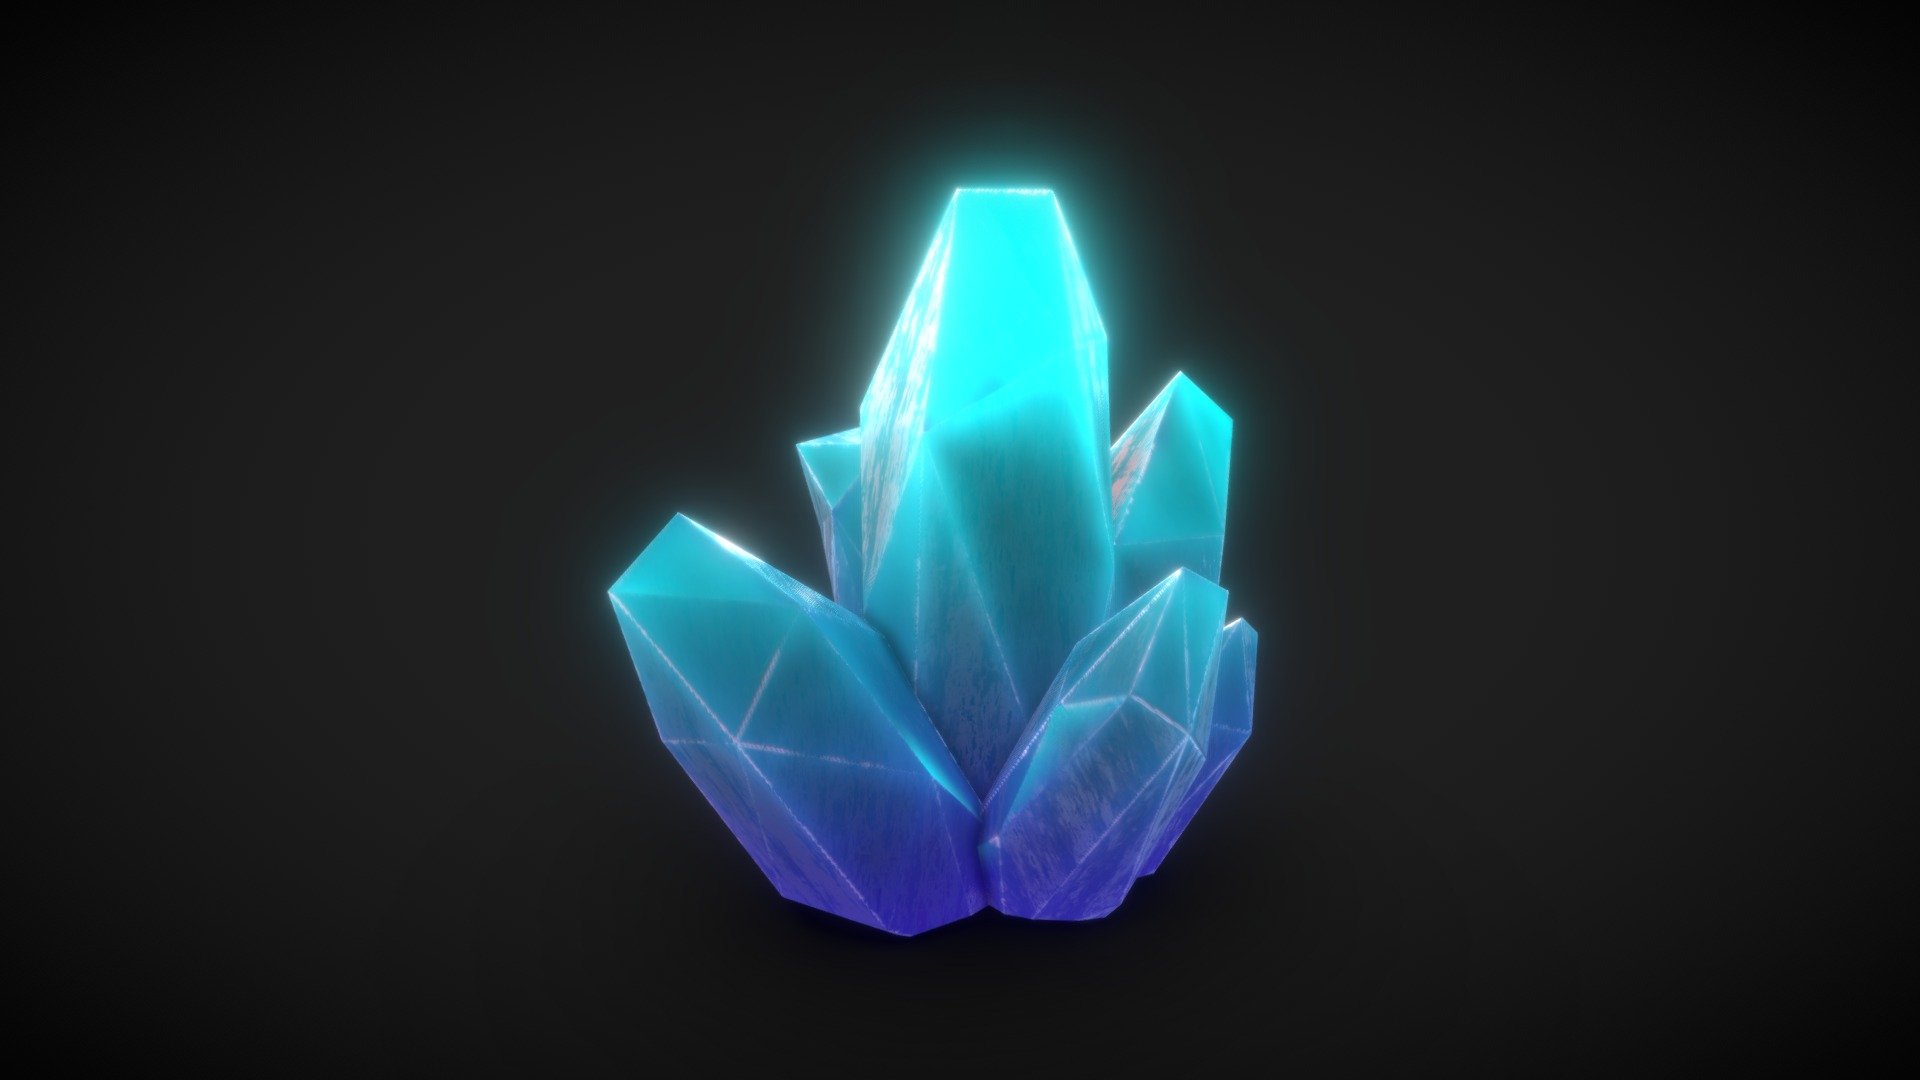 Glowing crystals